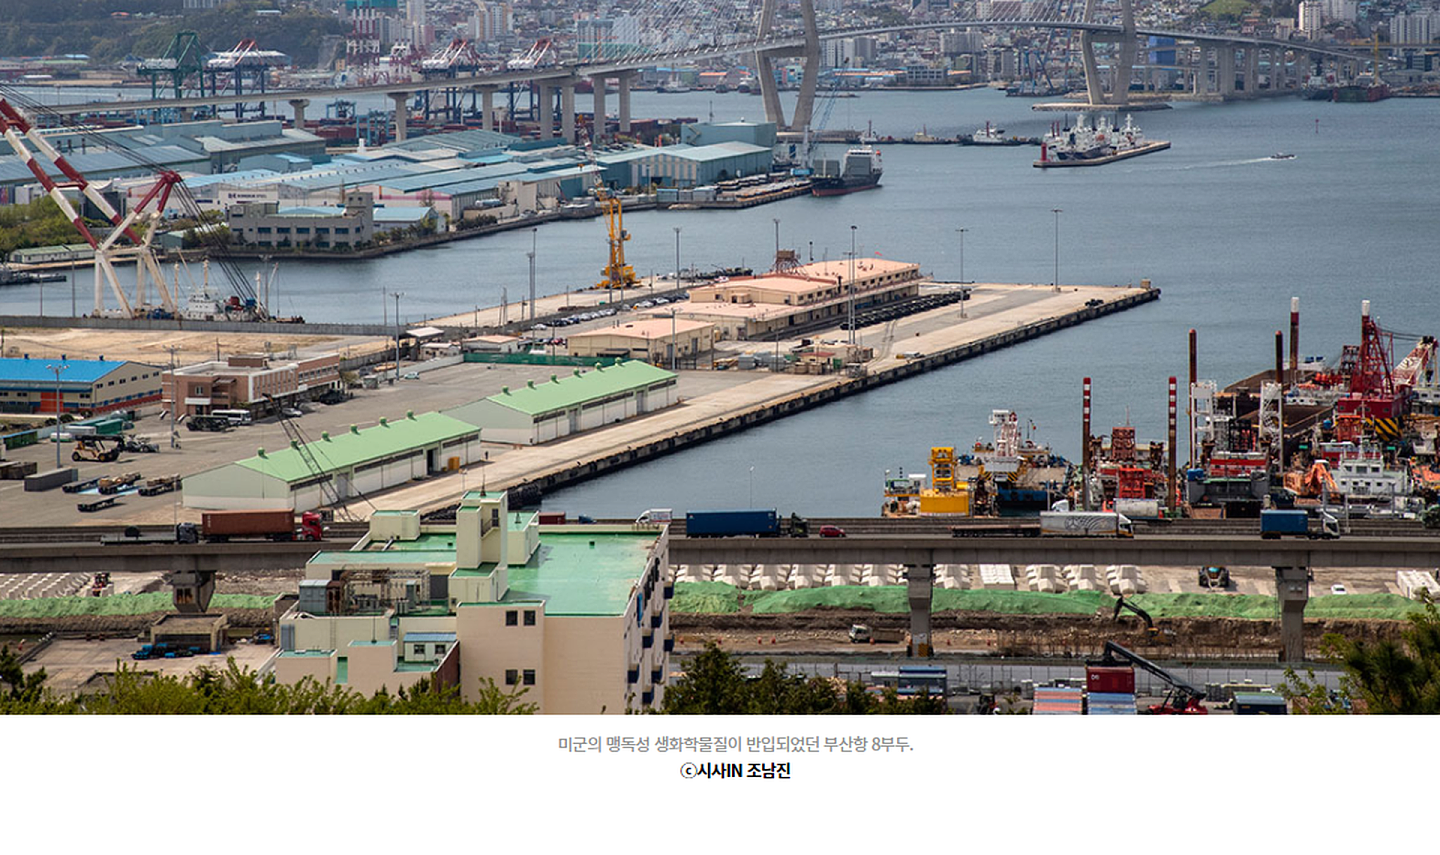 图中码头及厂房地区就是美军设置细菌实验室的釜山港北港第8码头，此地自朝鲜战争以来也一直是美军转运物资的重要场所，目前此地仅余军事用途。（SisaIN网页截图）